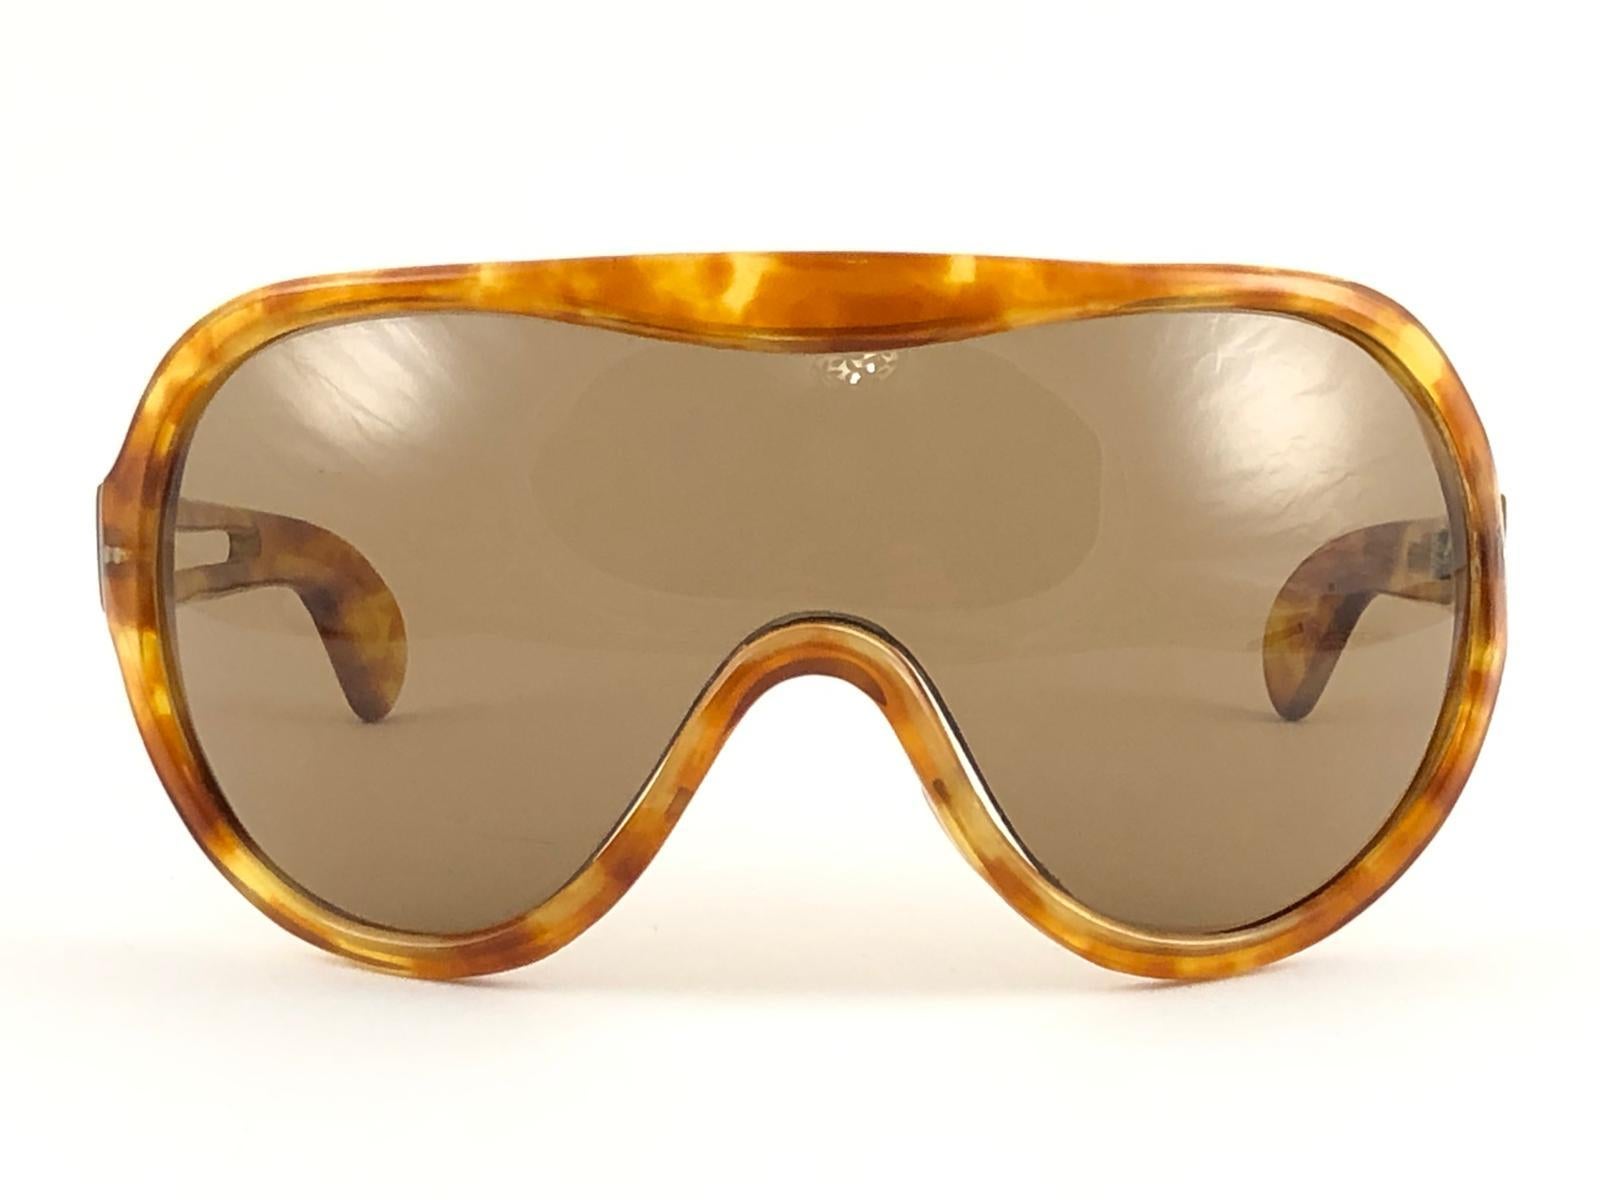 Nouvelles lunettes de soleil vintage Philippe Chevalier, pièce de collection rare, de taille surdimensionnée en écaille de tortue légère avec un verre mono brun moyen sans tache. De la même série que ceux portés par Miles Davis.
Une superbe